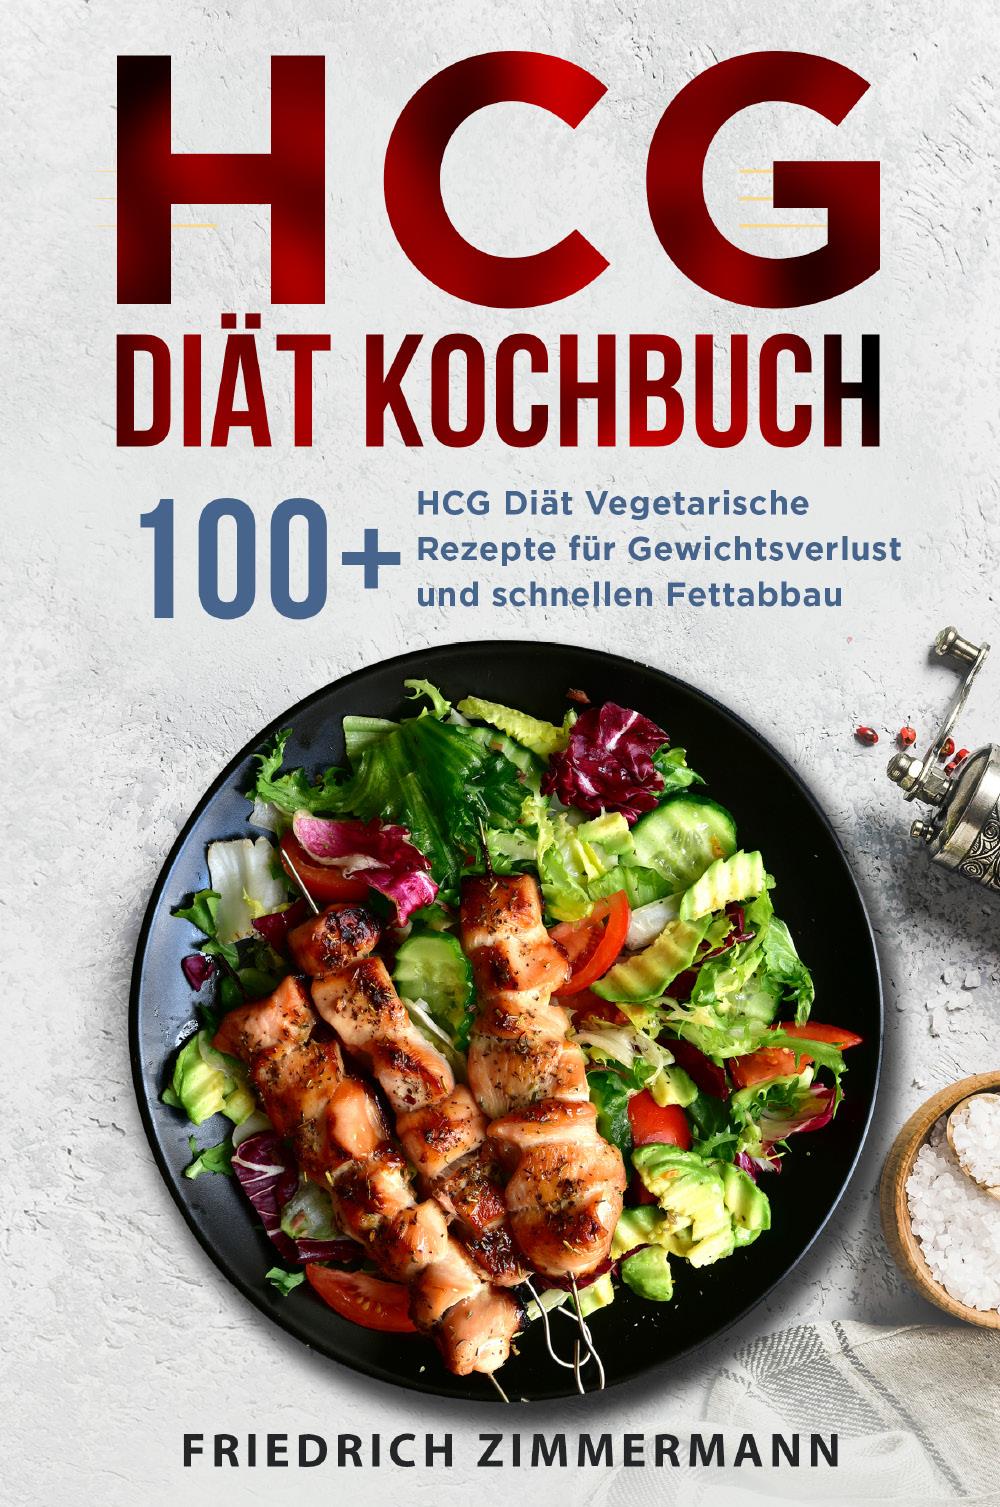 HCG Diät Kochbuch